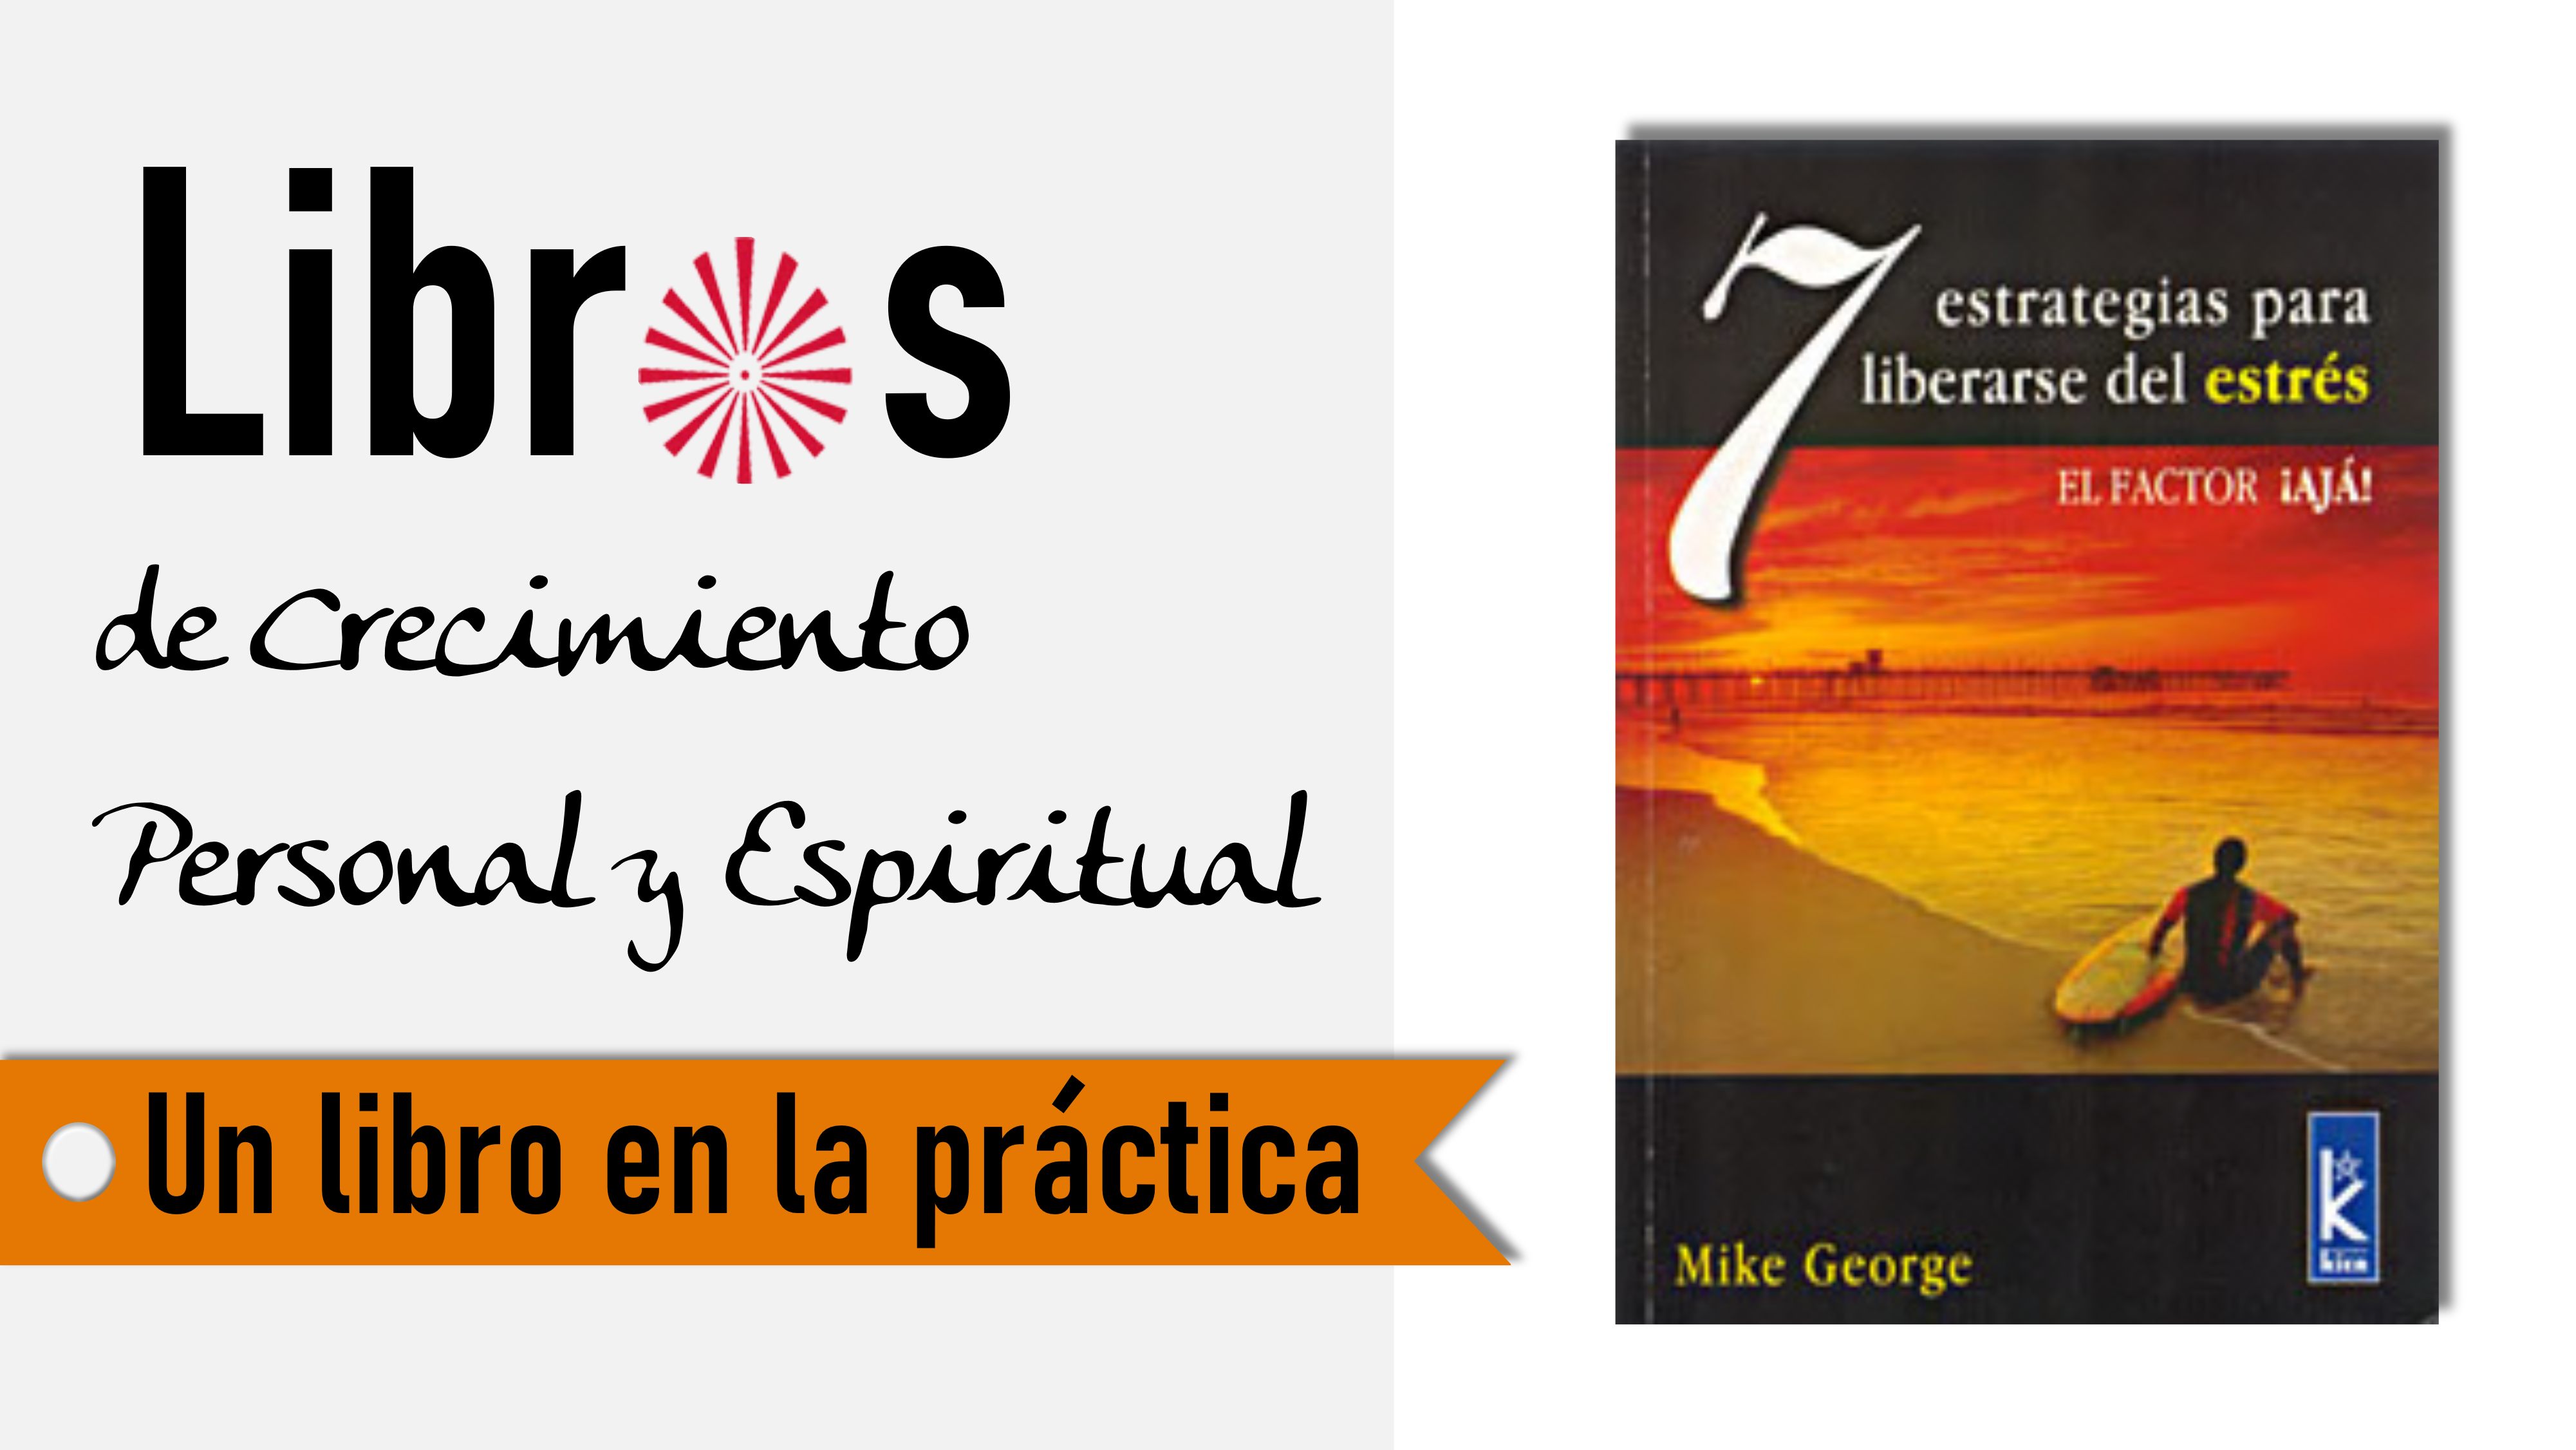 Un libro en la práctica: 7 estrategias para liberarse del estrés (8 Septiembre 2020) On-line desde Barcelona